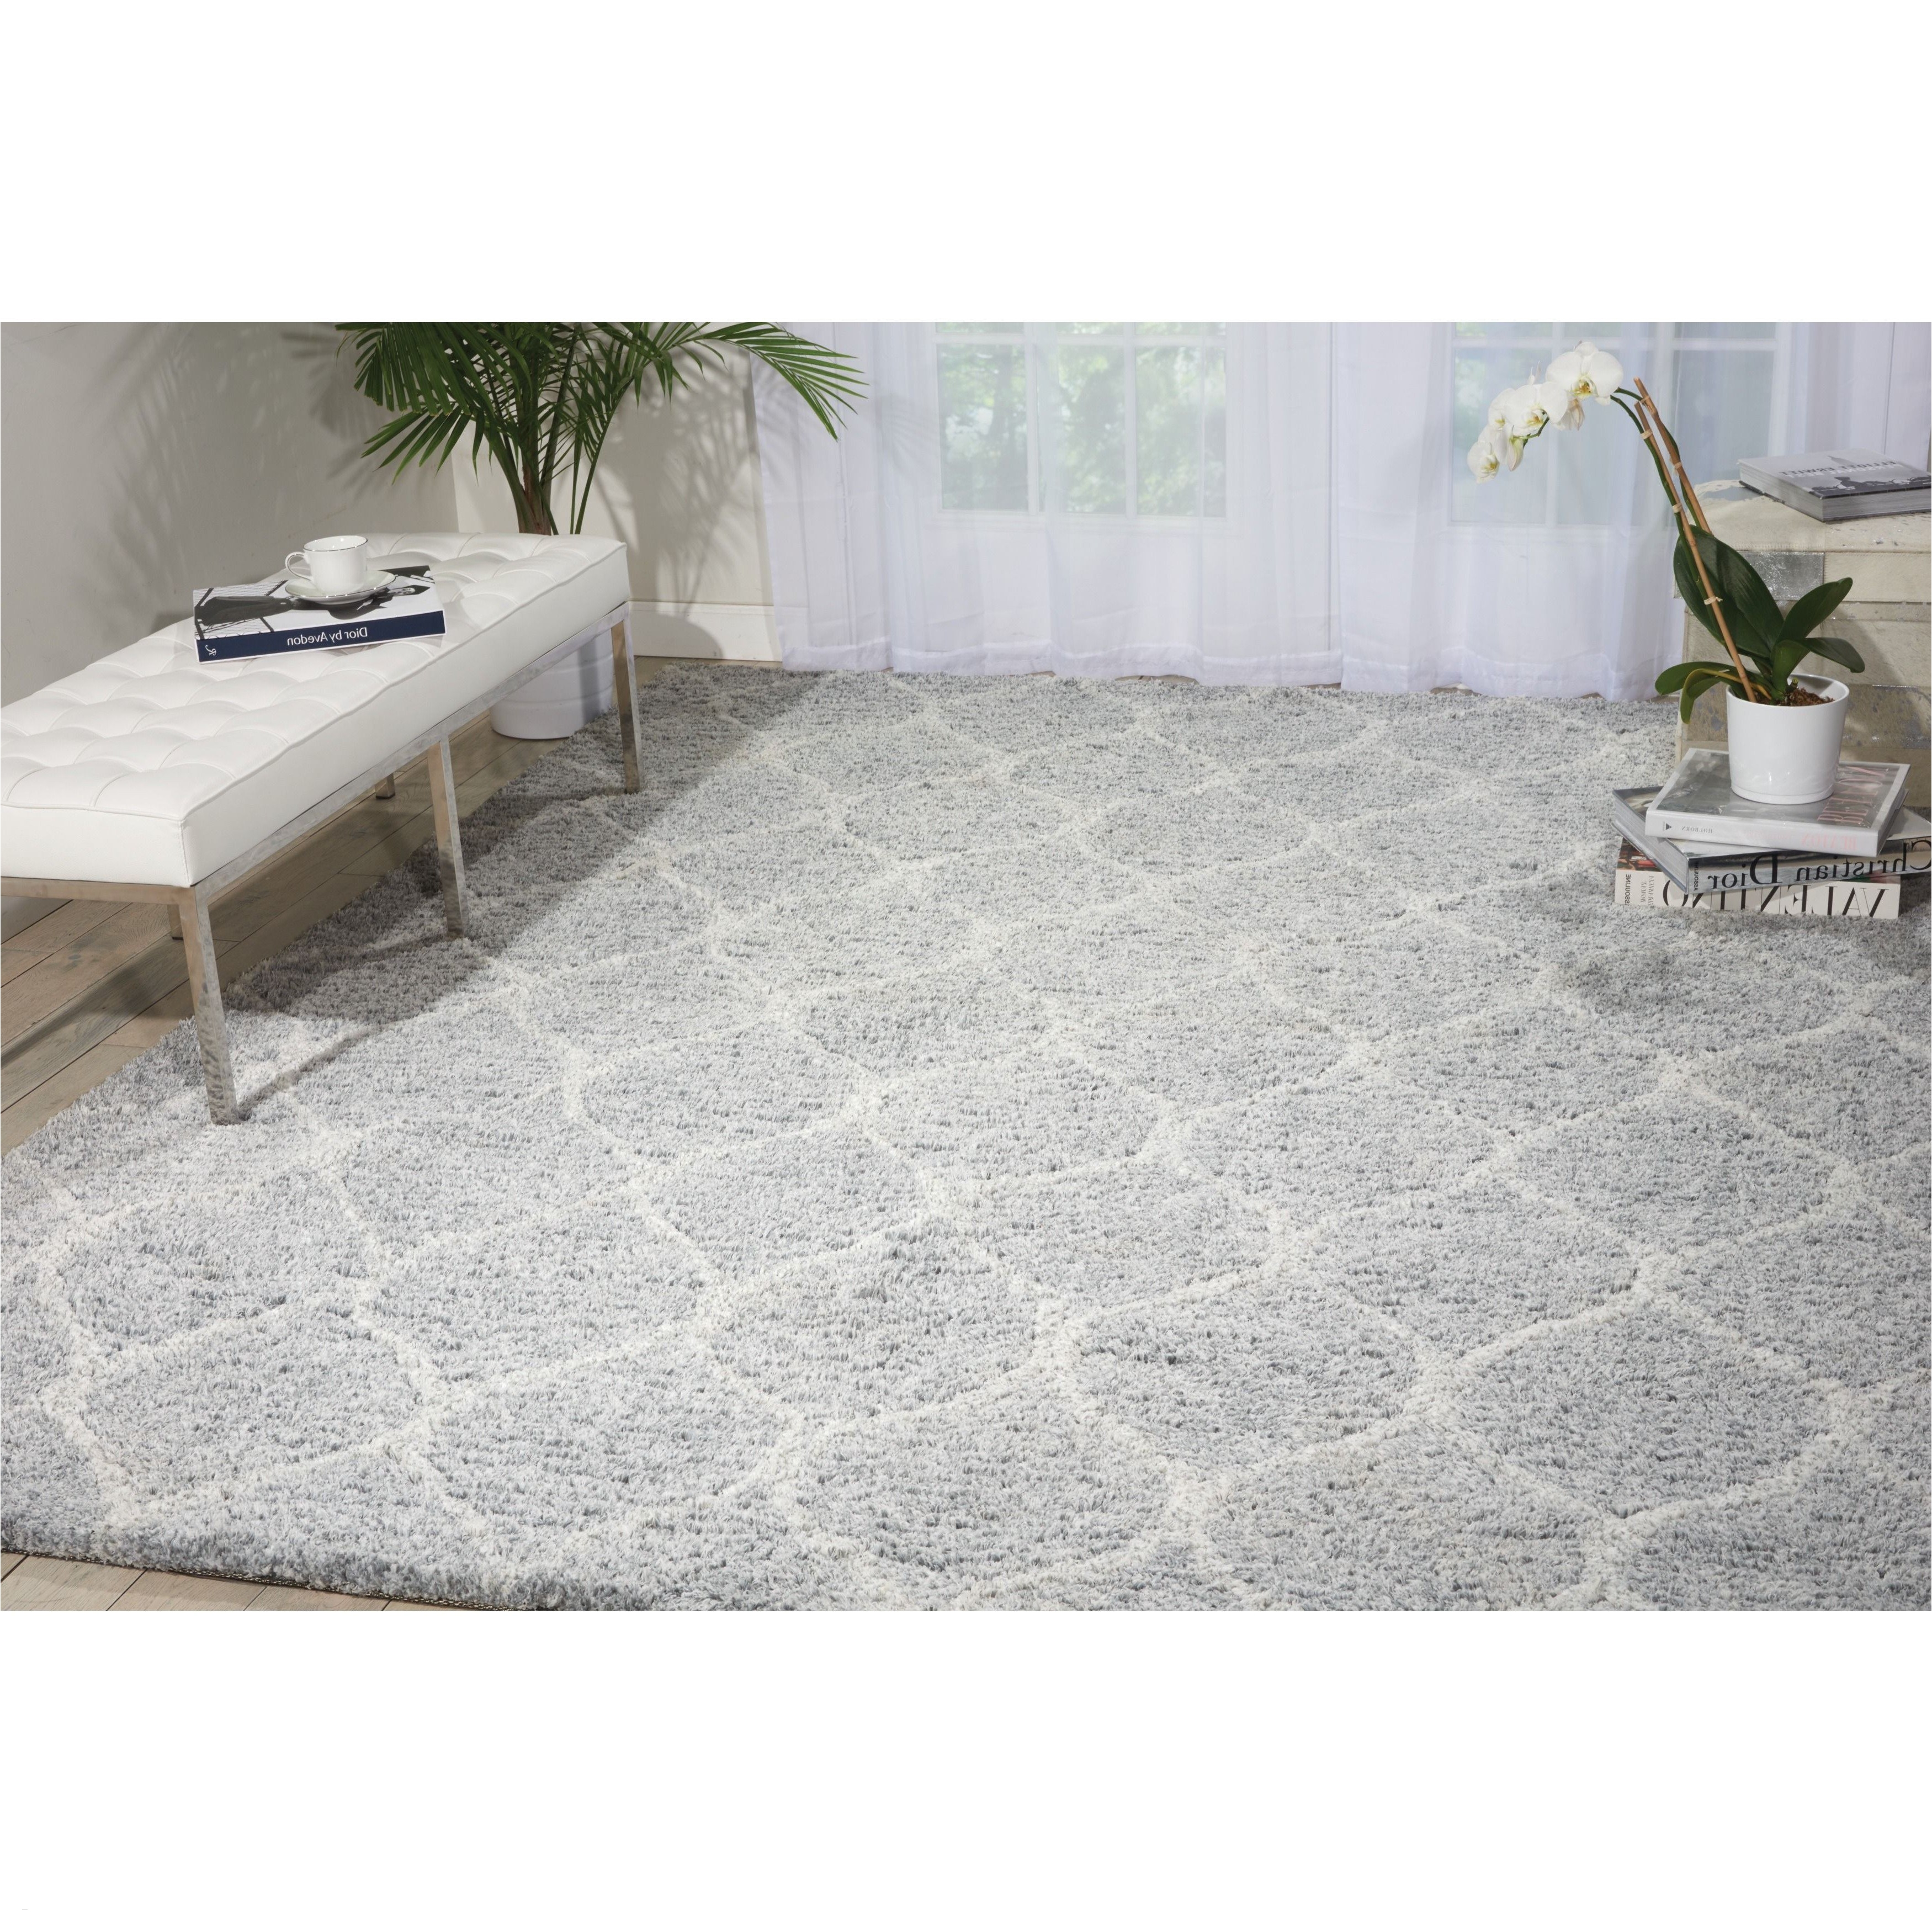 12 x 12 outdoor rug fresh new outdoor rug ikea outdoor